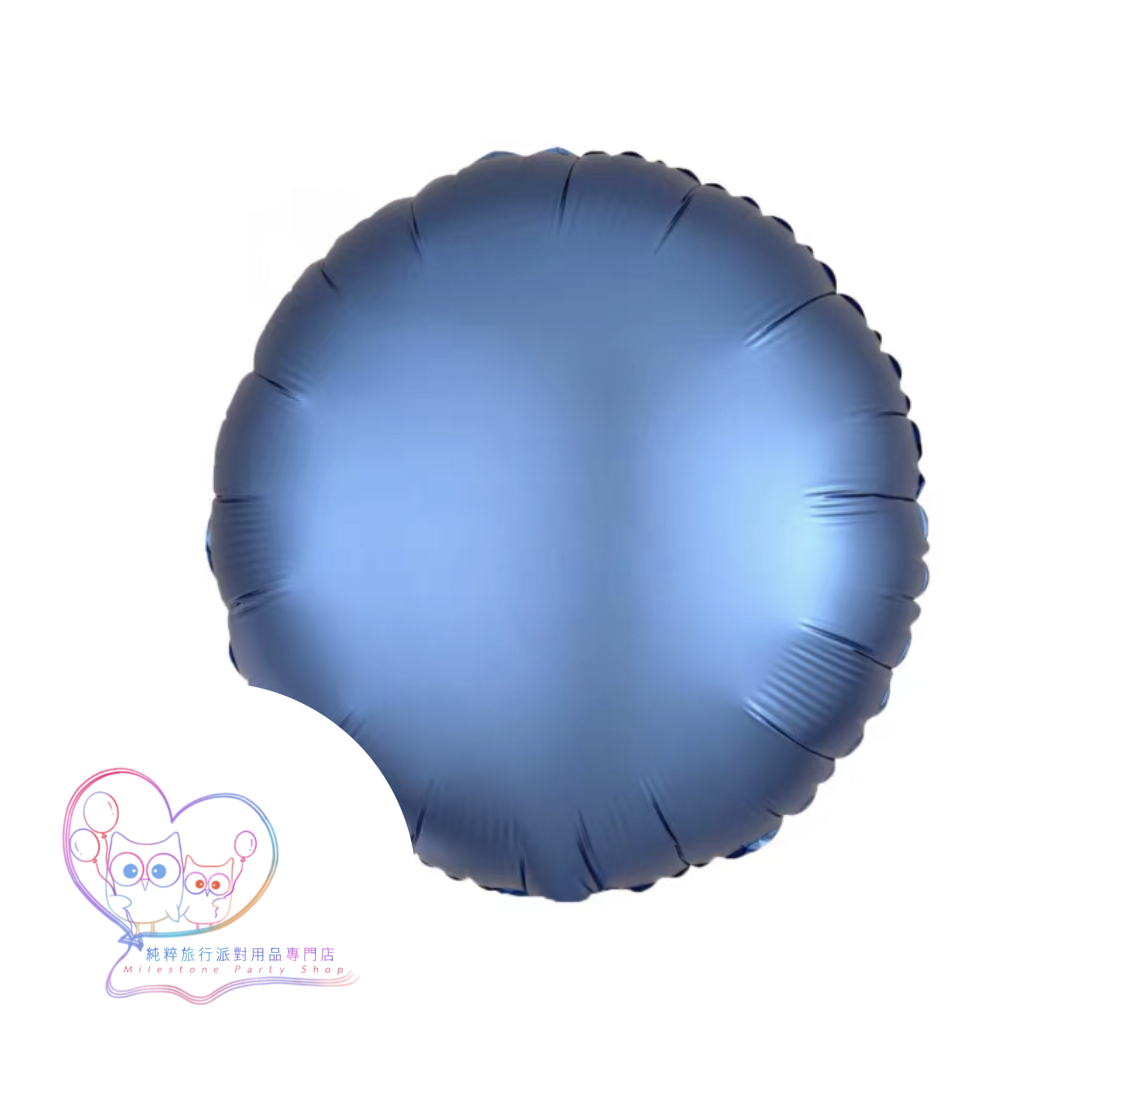 18吋圓形鋁膜氣球 (磨砂粉藍色) 18OM6